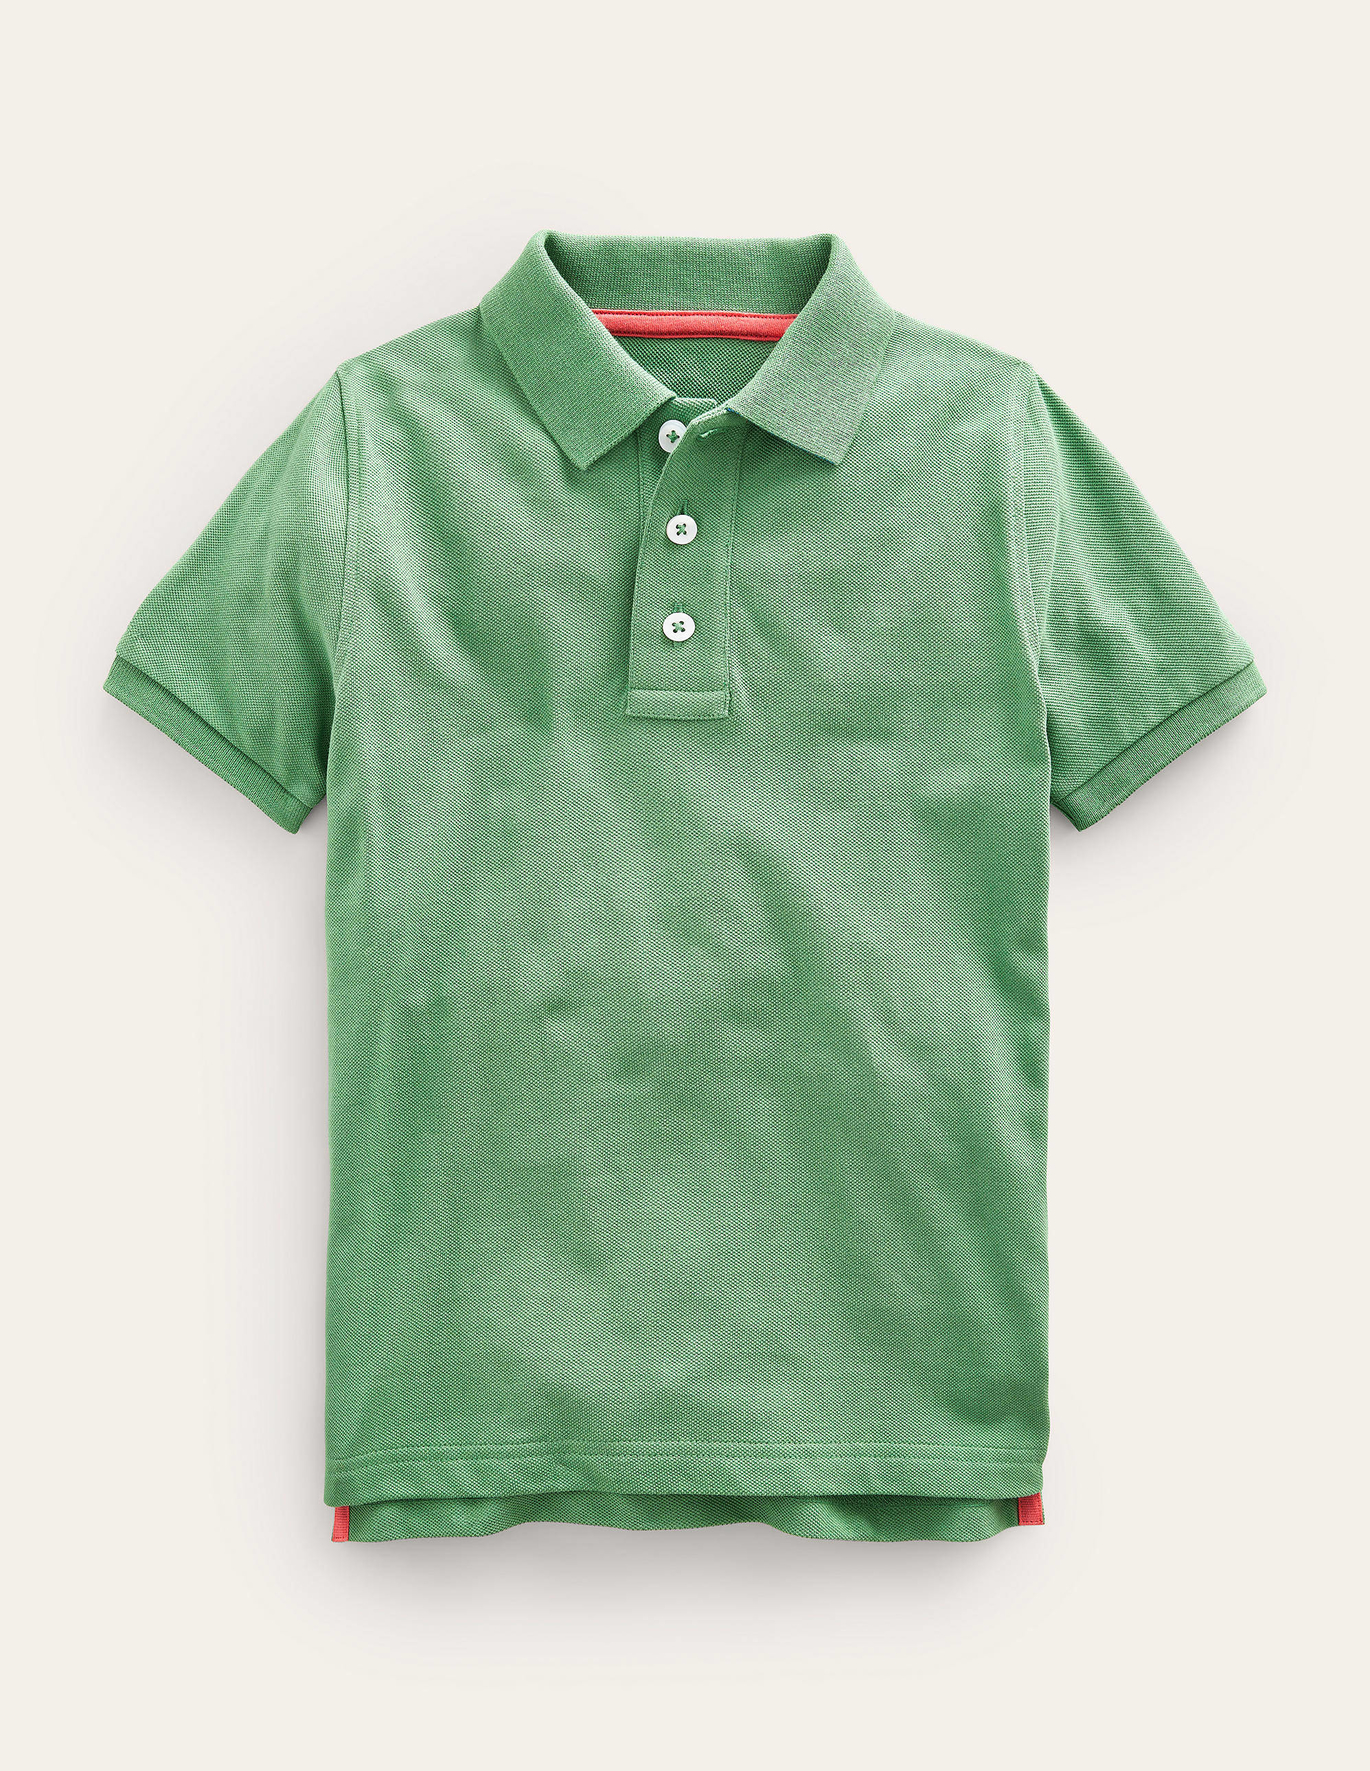 Boden Pique Polo Shirt - Deep Grass Green